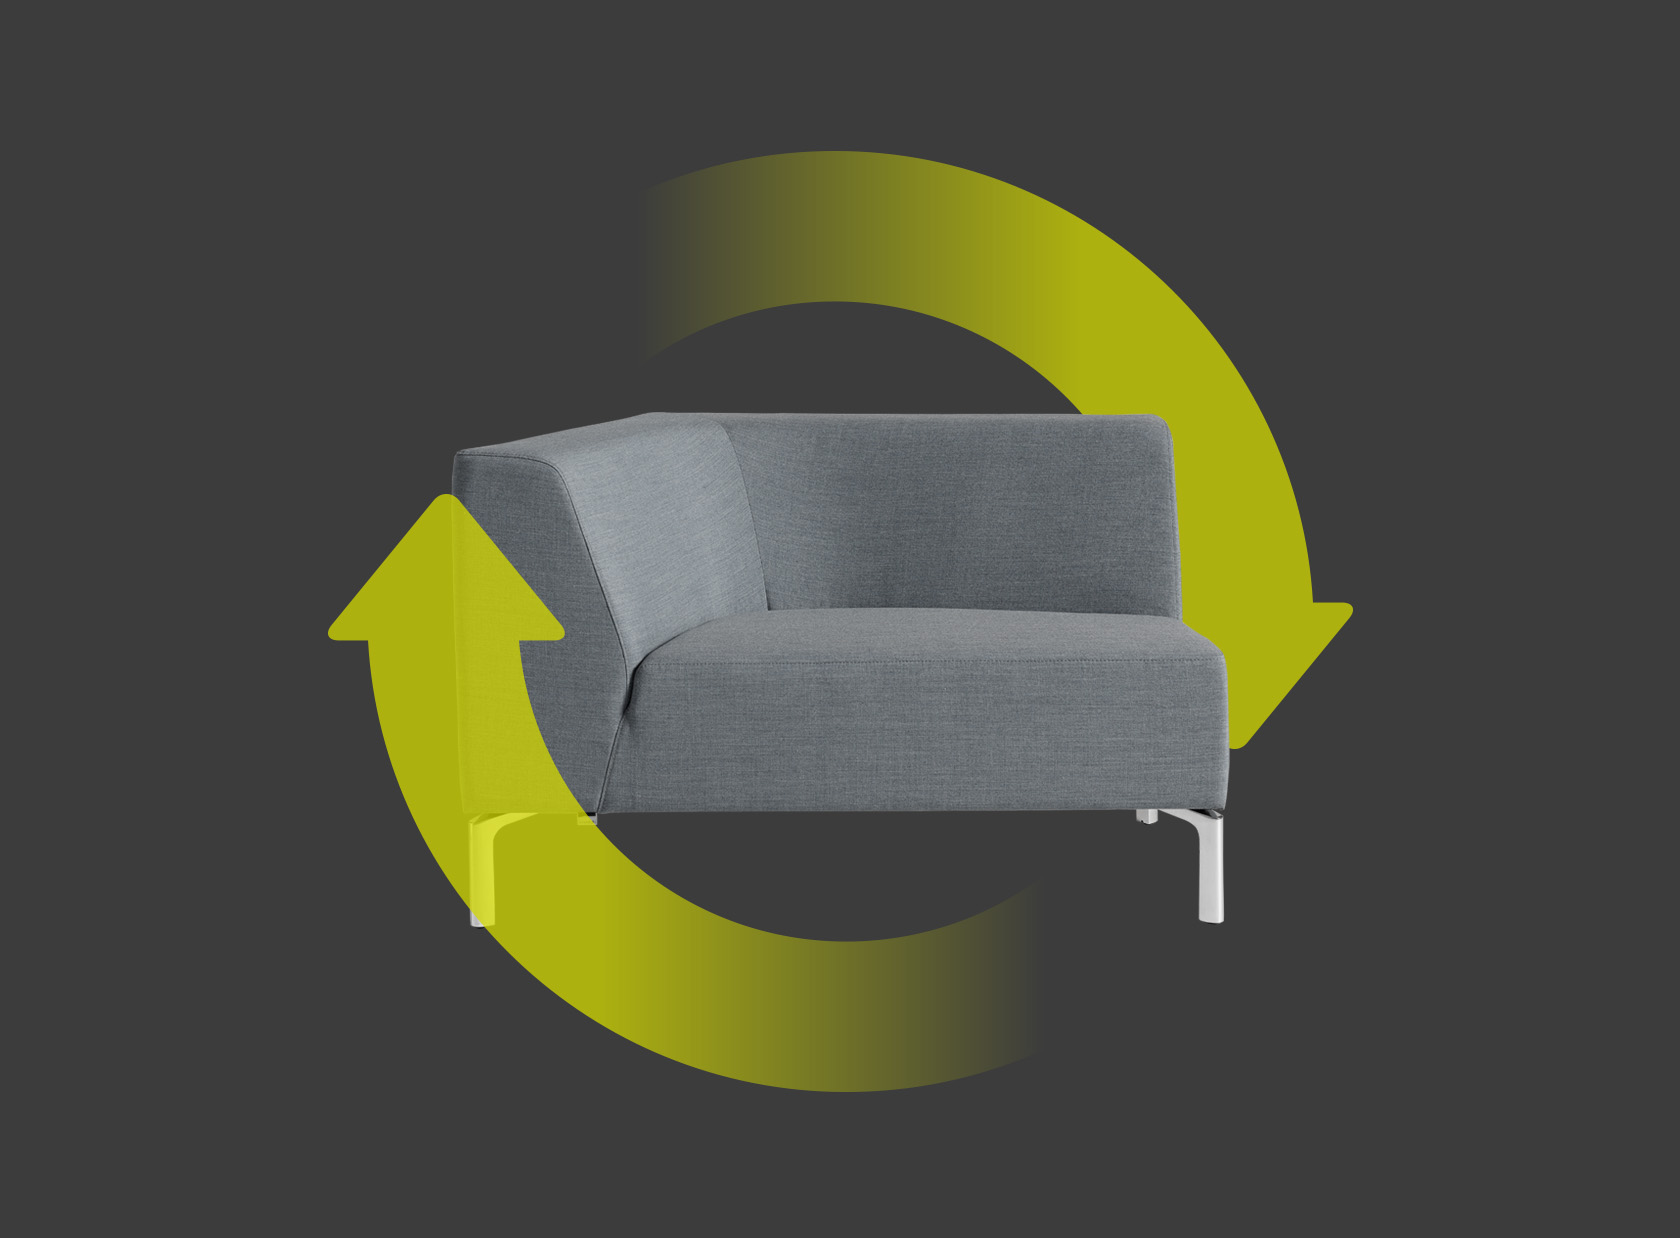 Tangram Sitzelement rechts in Grau mit zwei grünen Pfeilen, die um das Sitzelement einen Kreis bilden. Diese weisen auf die Nachhaltigkeit und Wiederverwendbarkeit des Stuhls hin.